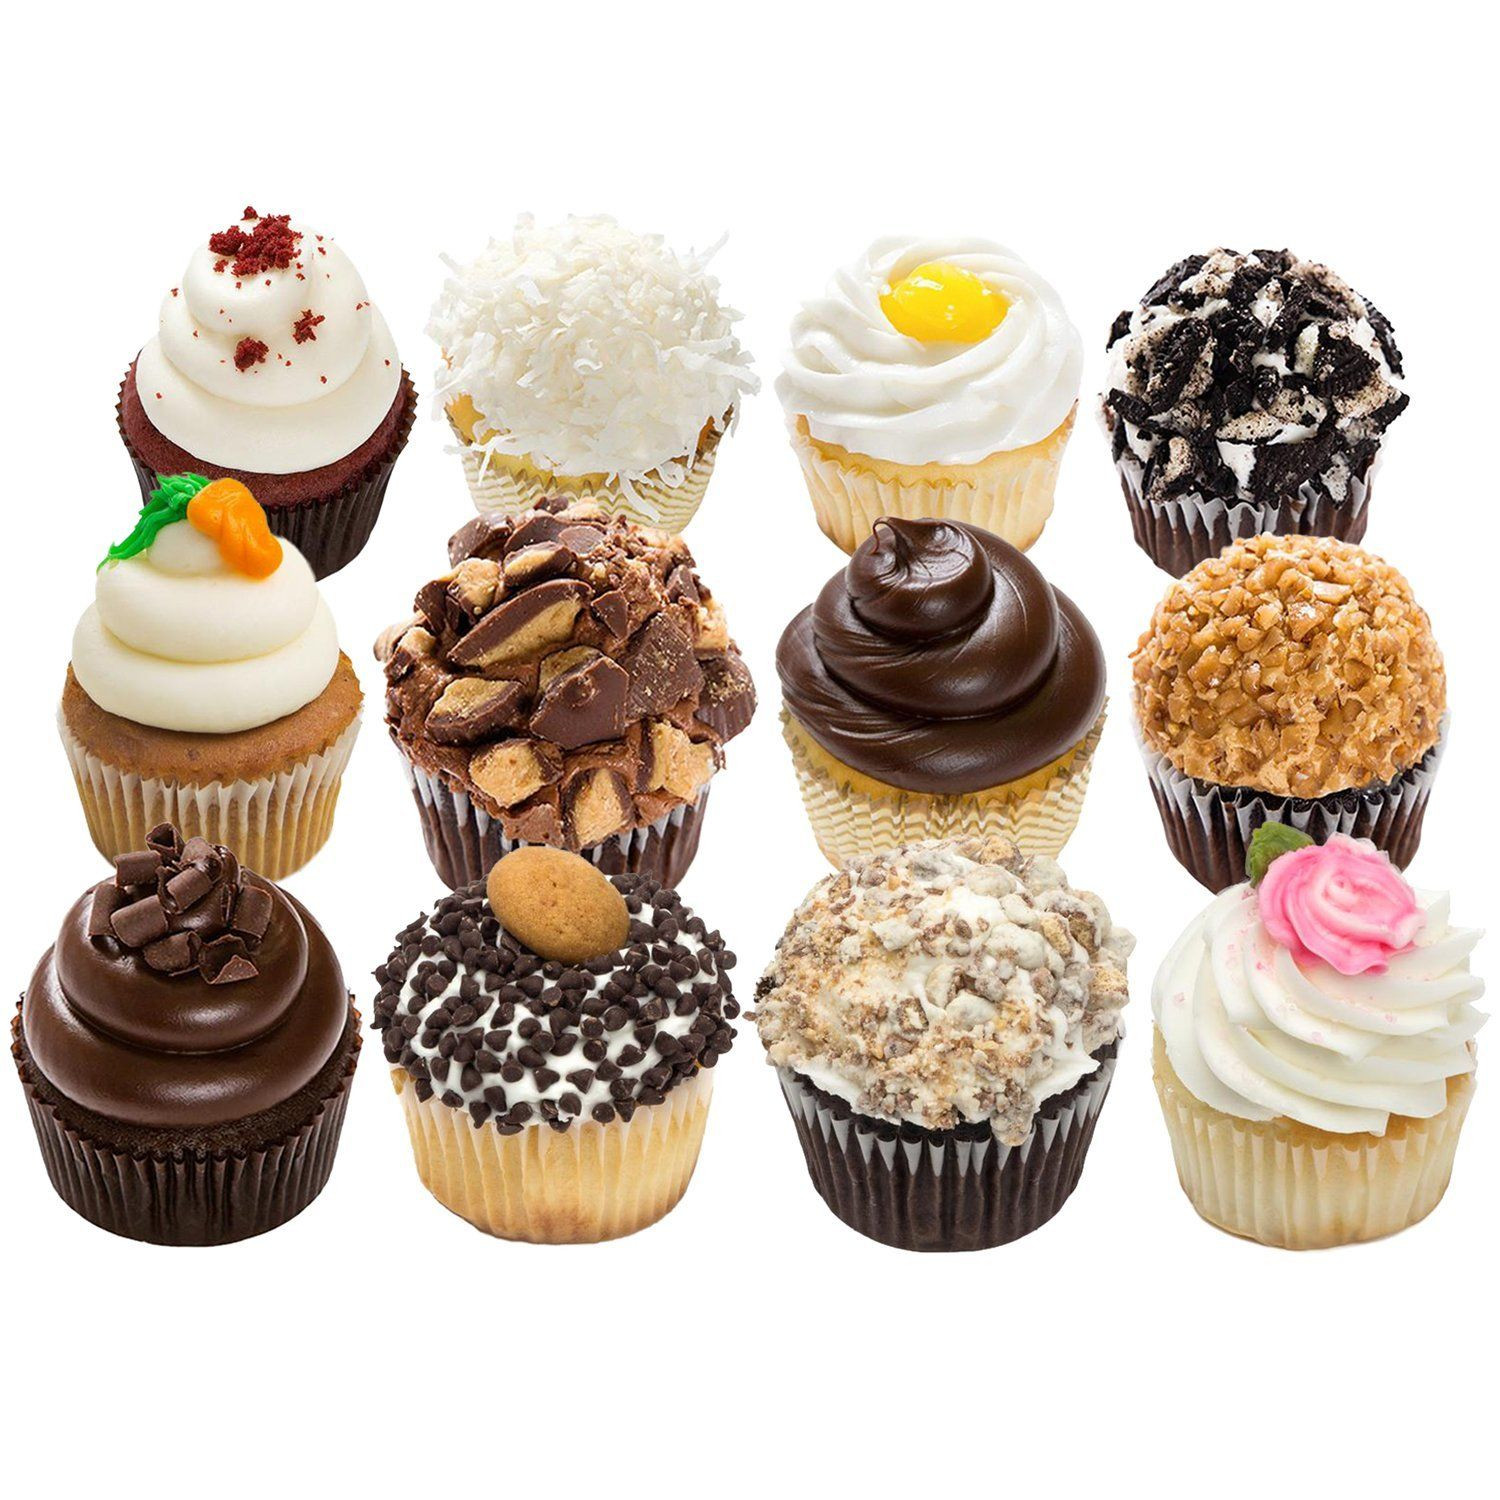 Desserts Delivered To Your Door
 12 Gourmet Cupcakes delivered straight to your door